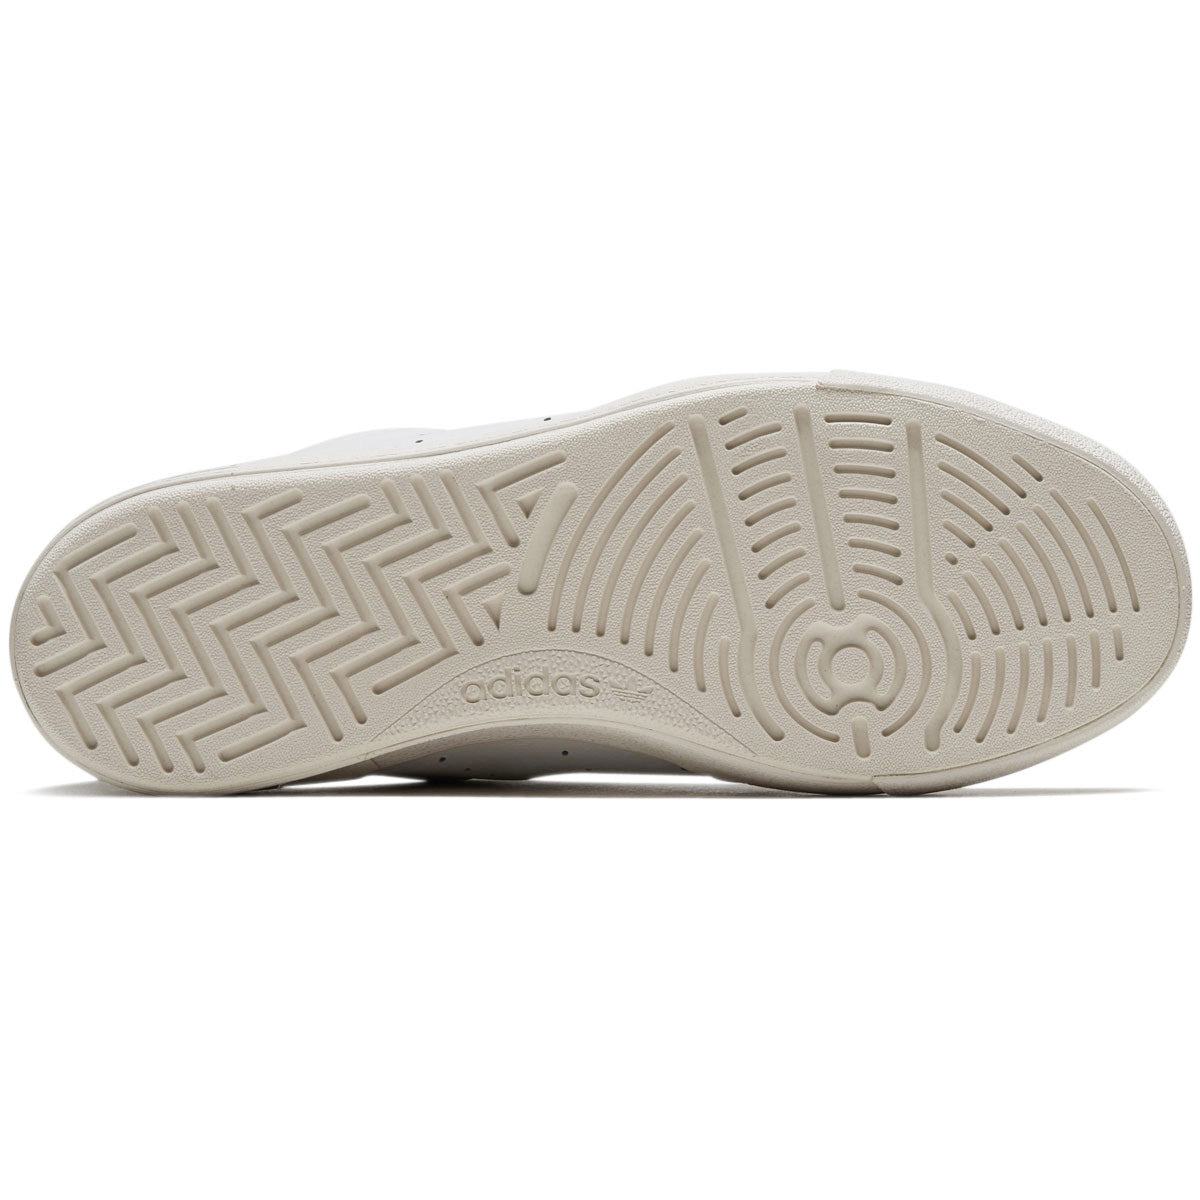 Adidas Nora Shoes - White/White/Chalk White image 4